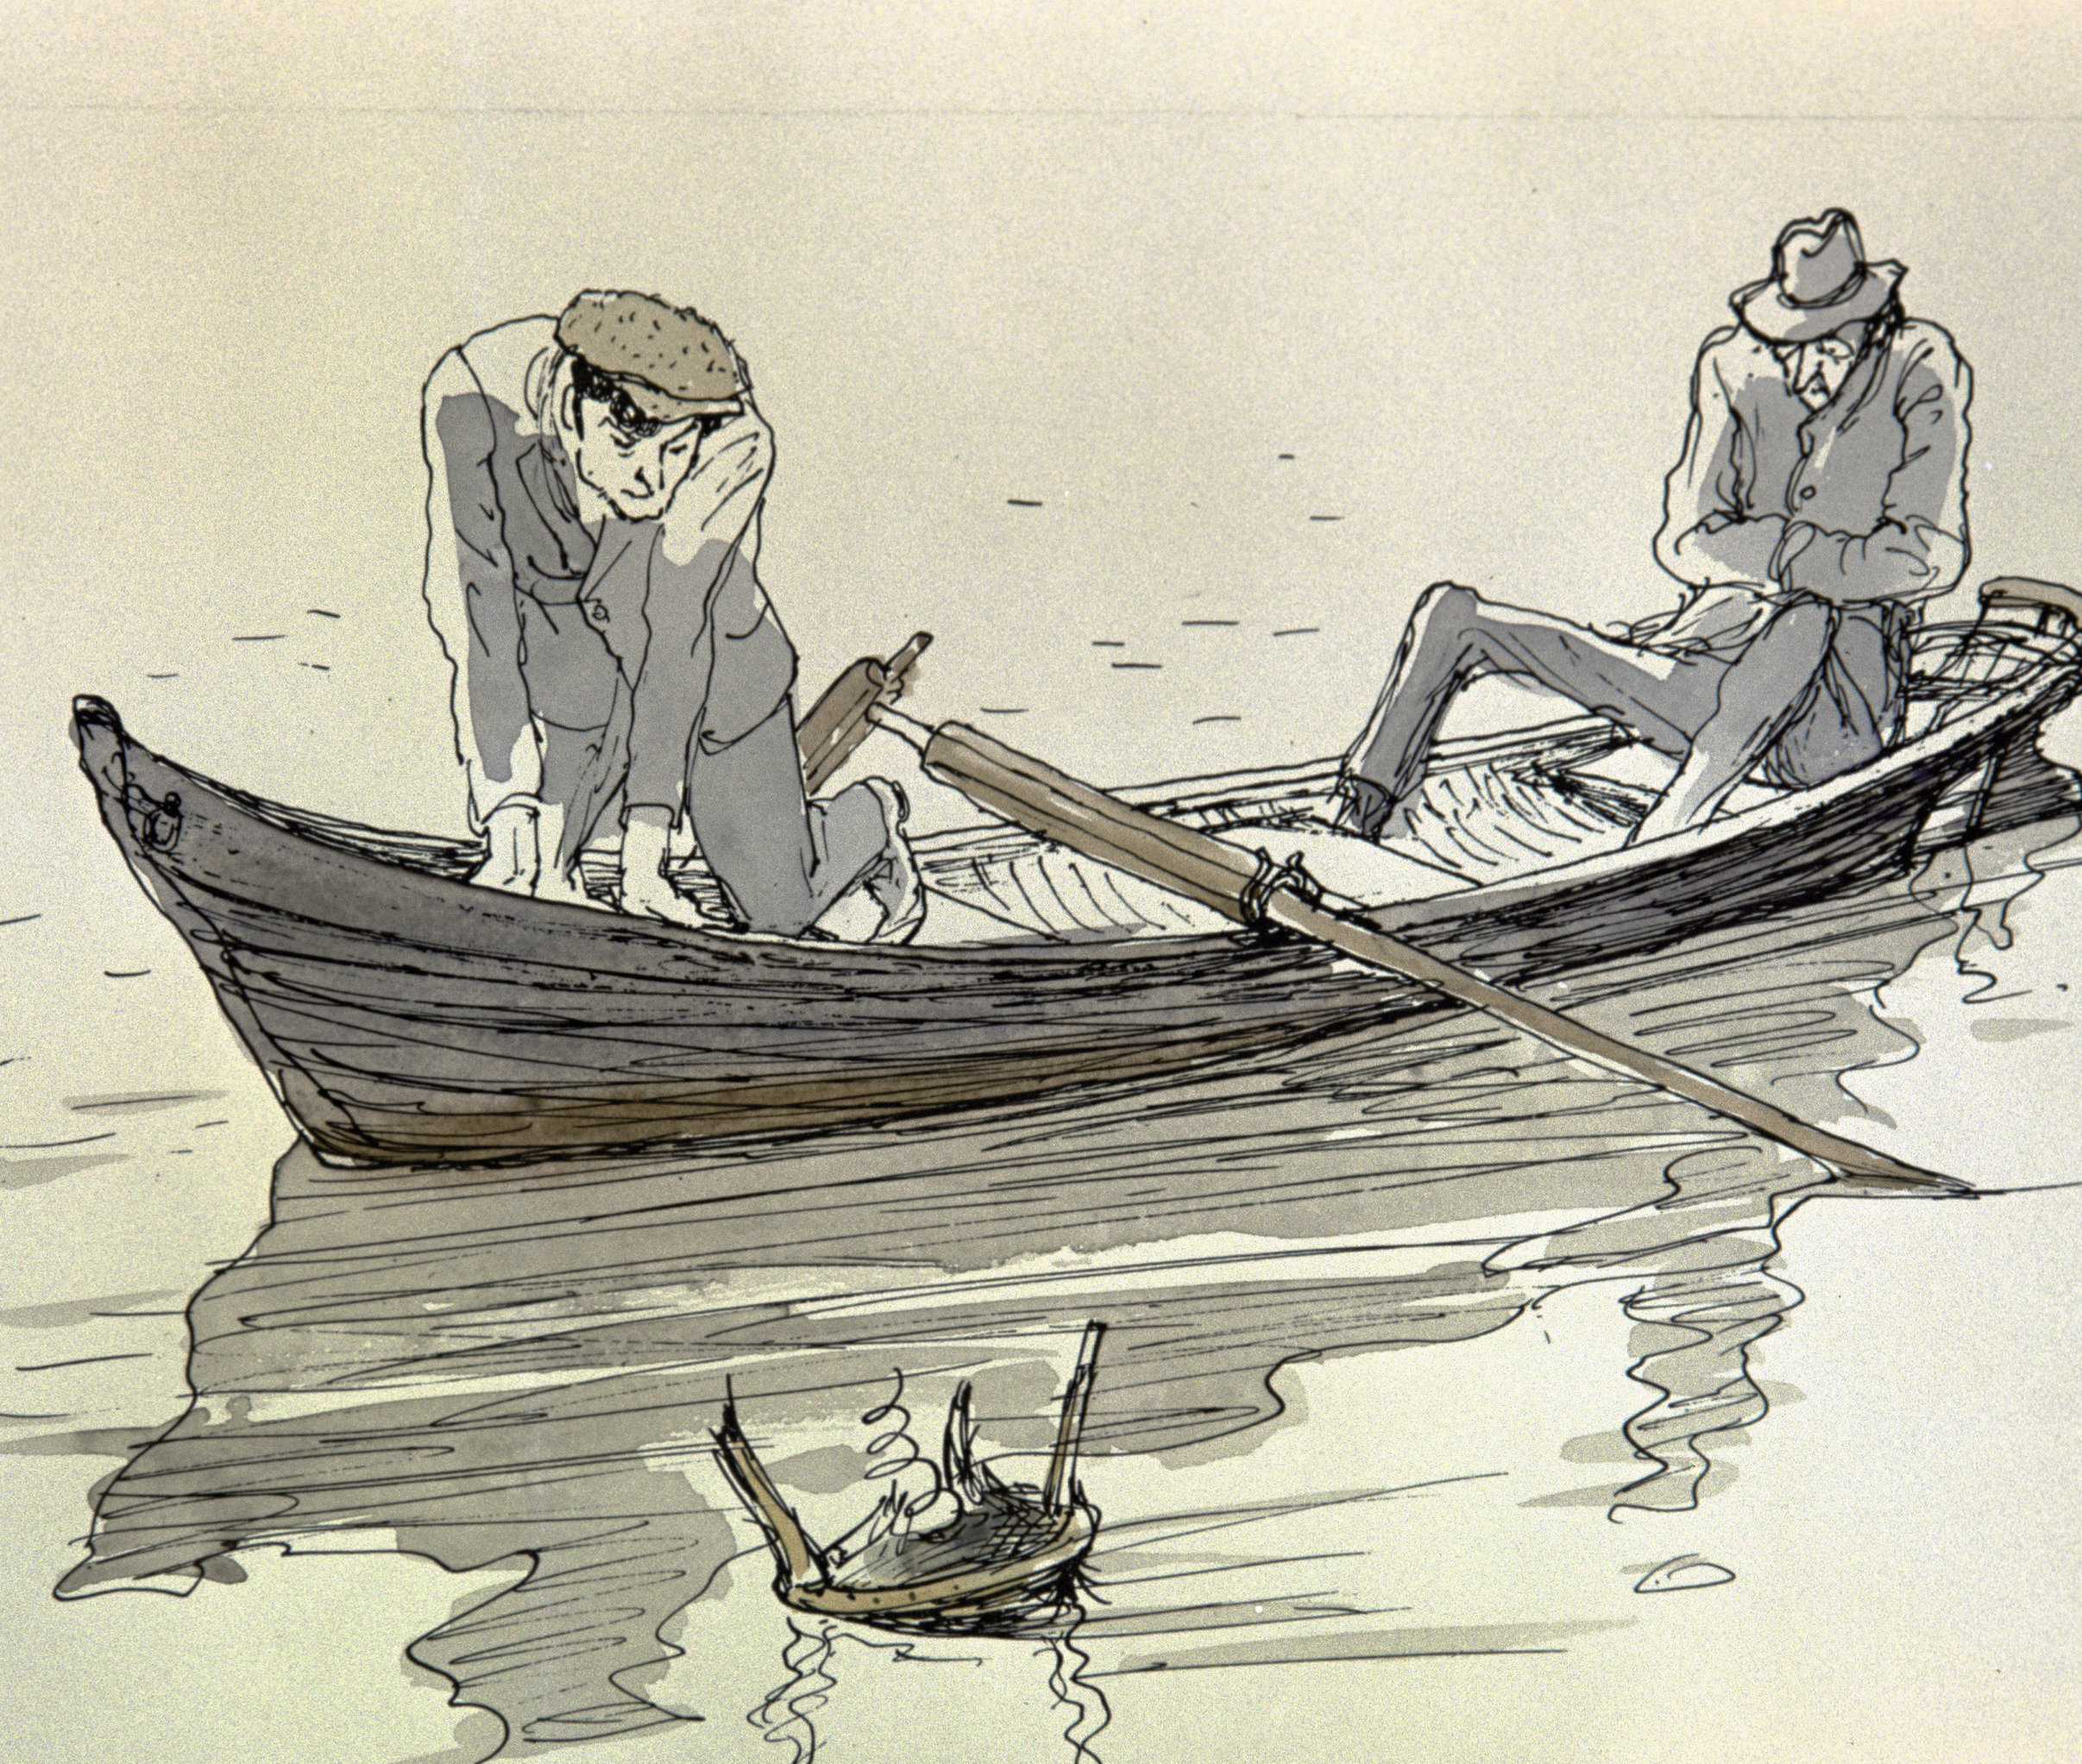 Самая легкая лодка в мире герои произведения. 12 Стульев иллюстрации Кукрыниксы. Иллюстрации Кукрыниксов к 12 стульям. Кукрыниксы двенадцать стульев.